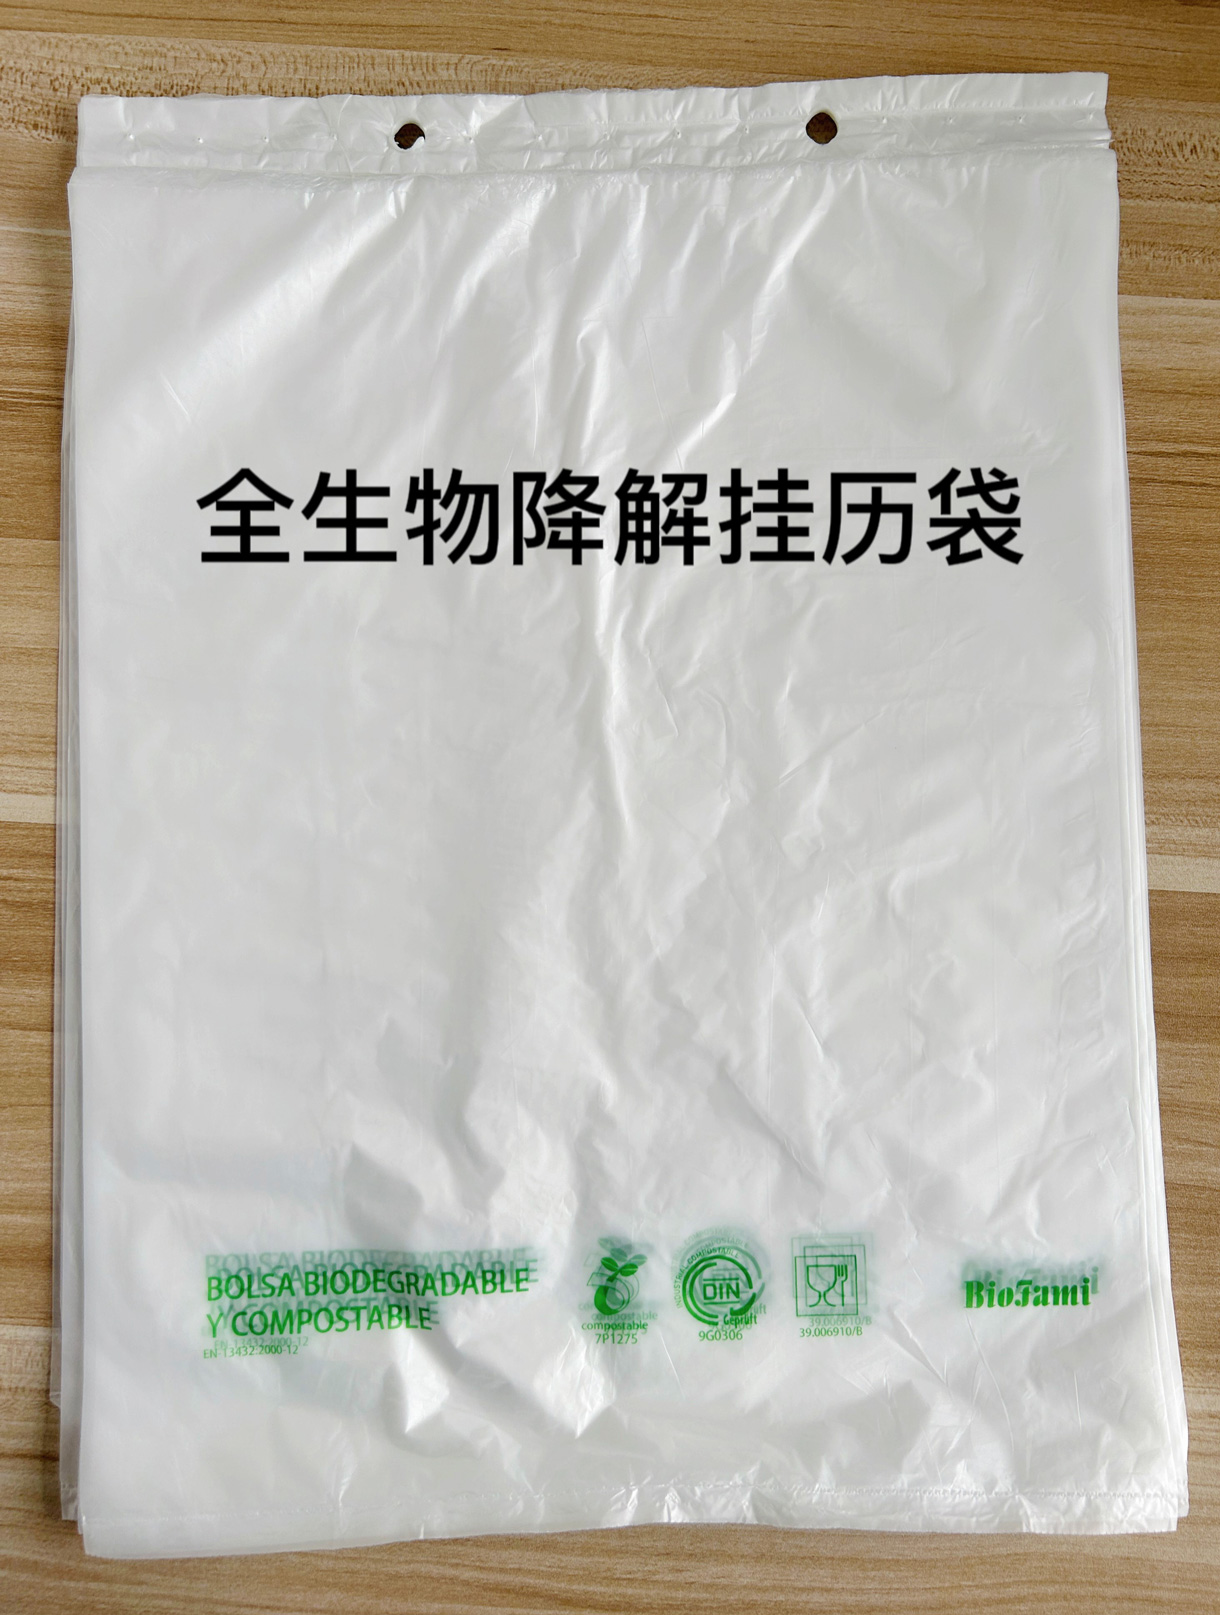 宁波置富智连科技有限公司将亮相CIPPME上海国际包装展